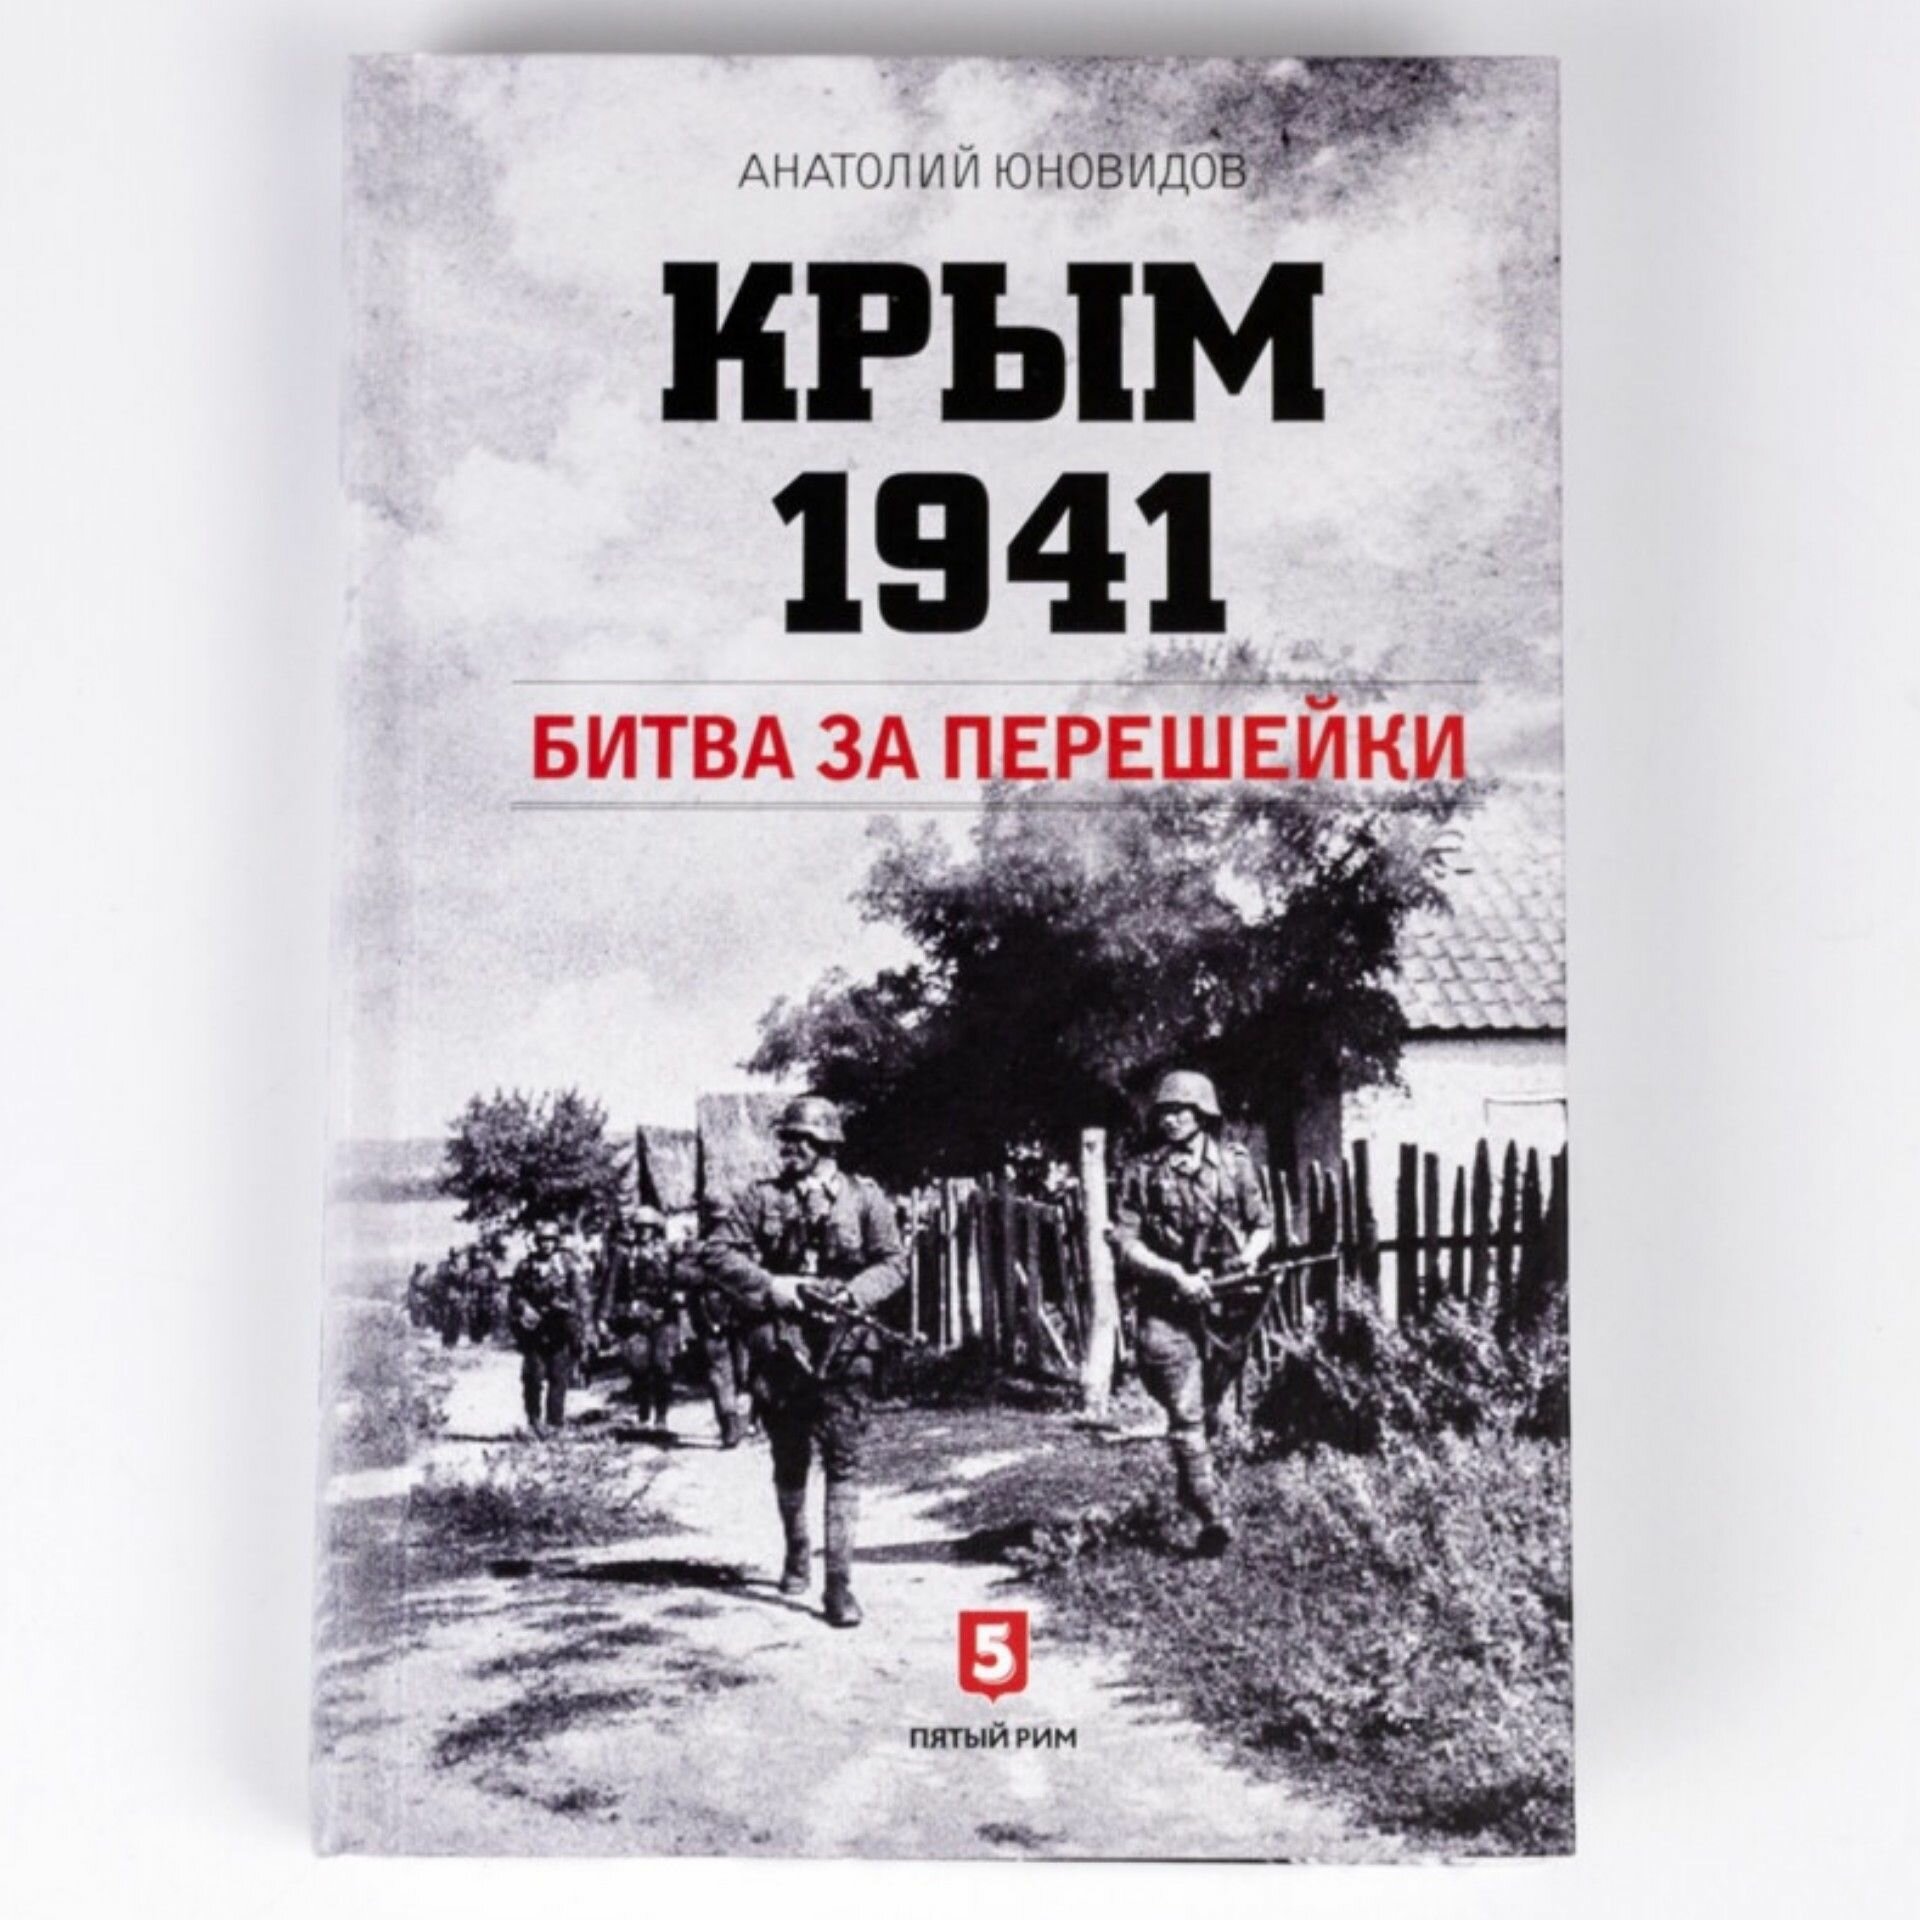 Крым 1941. Битва за перешейки (Юновидов Анатолий Сергеевич) - фото №6